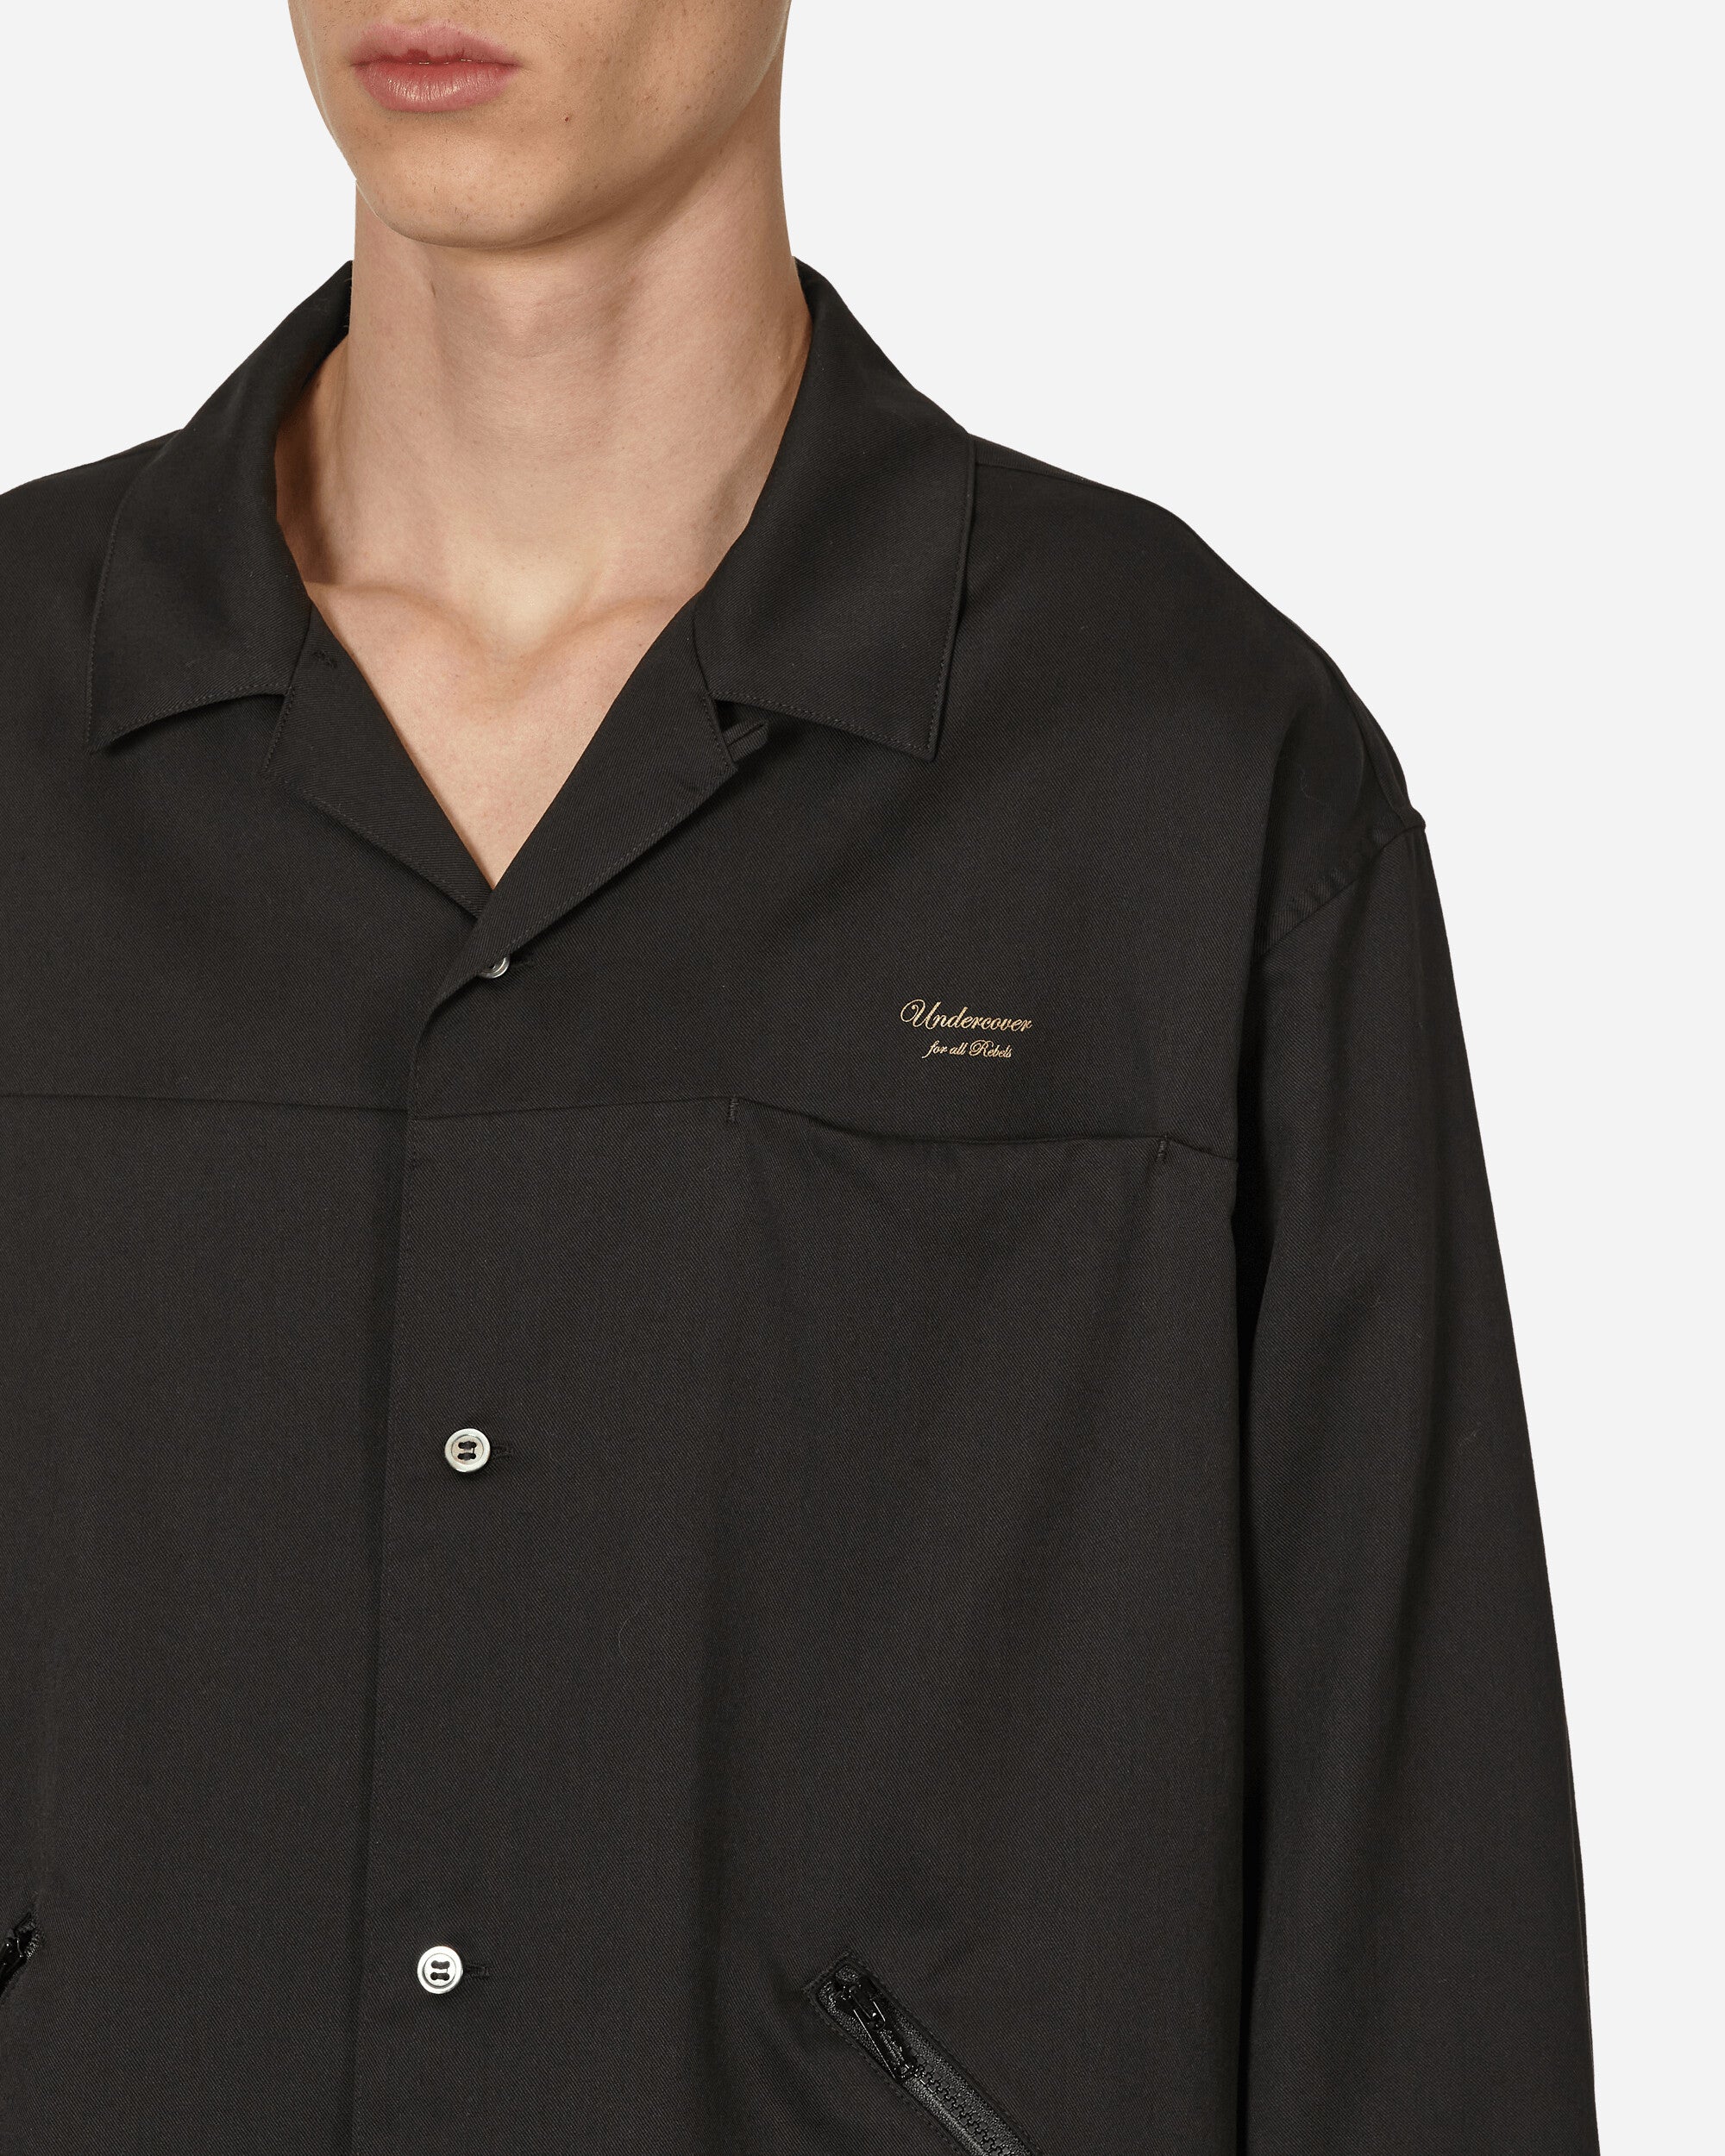 Undercover Shirt Blouse Black Shirts Longsleeve Shirt UP1D4401-2 1